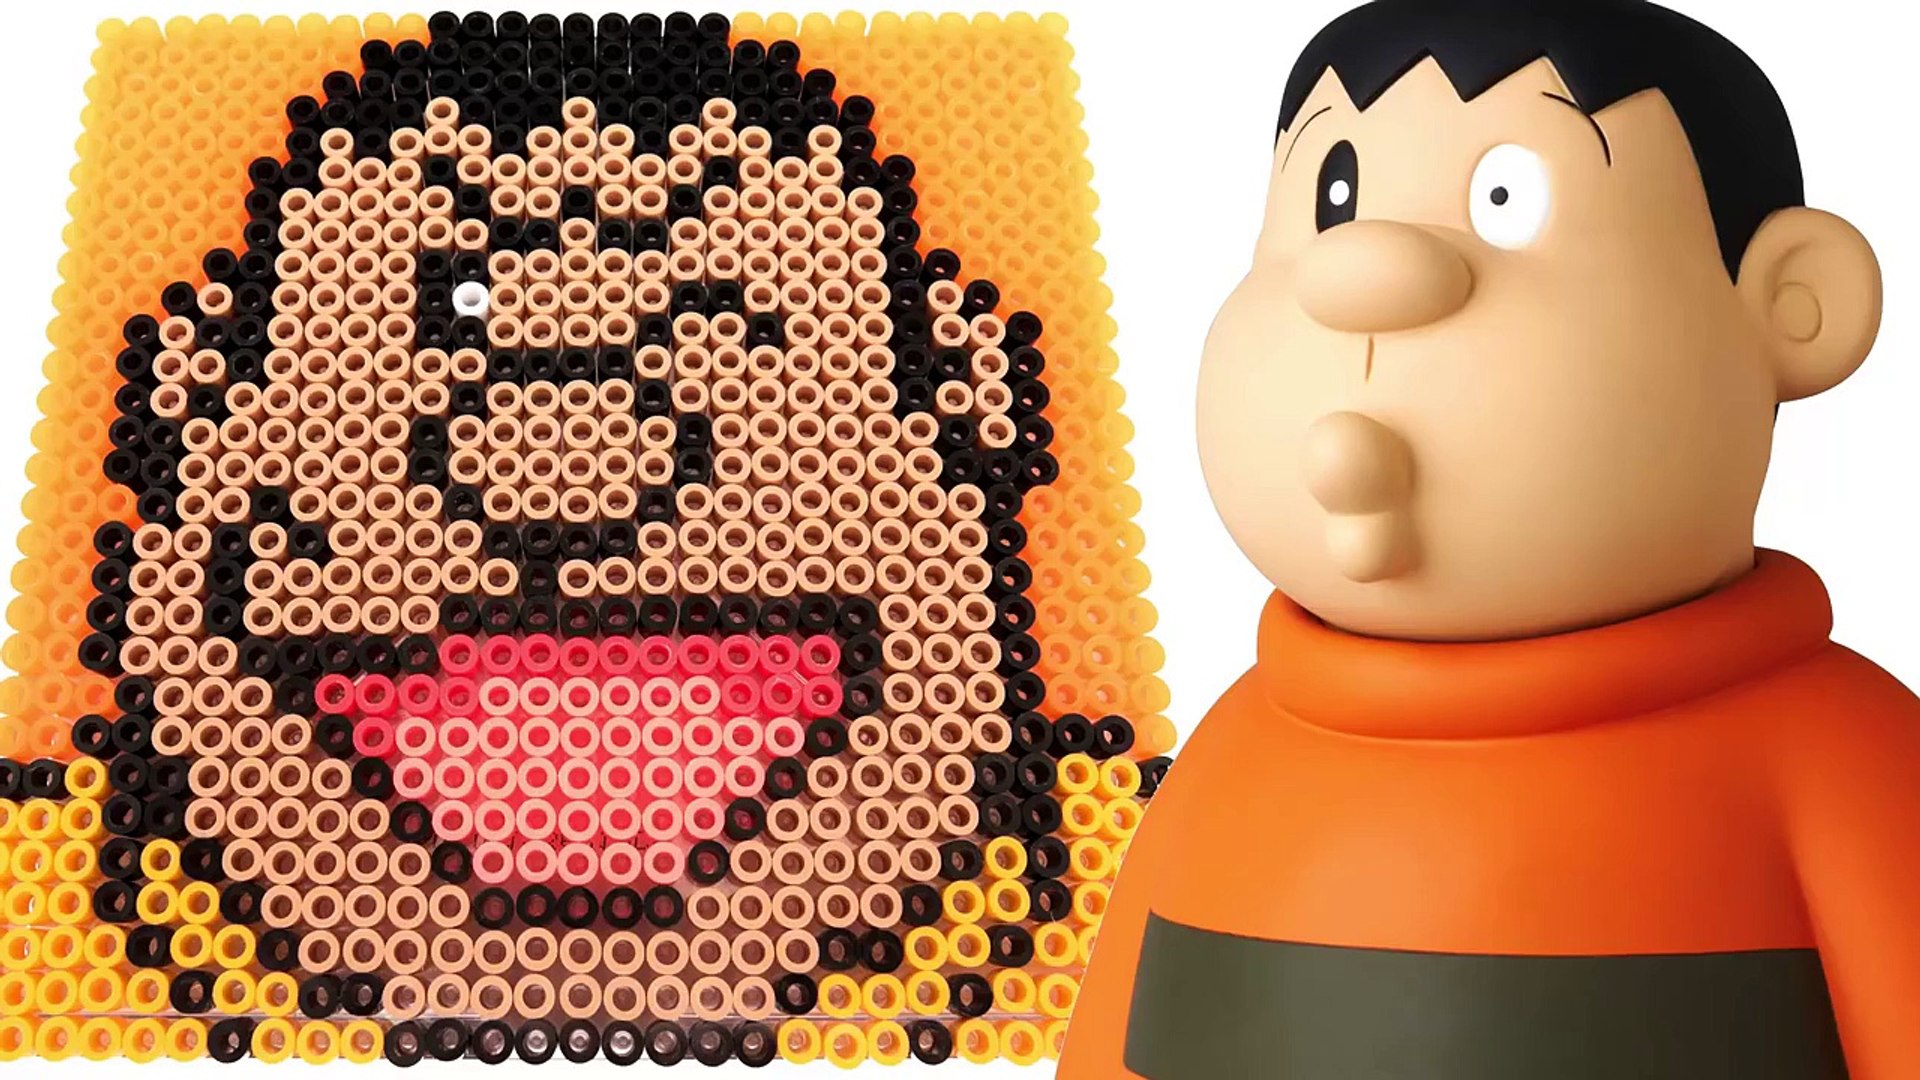 ドラえもん ドット絵 ジャイアンをビーズで描く Big G Ppcandy Channel Doraemon Pixel Art Parlor Beads Minecraft Dailymotion Video